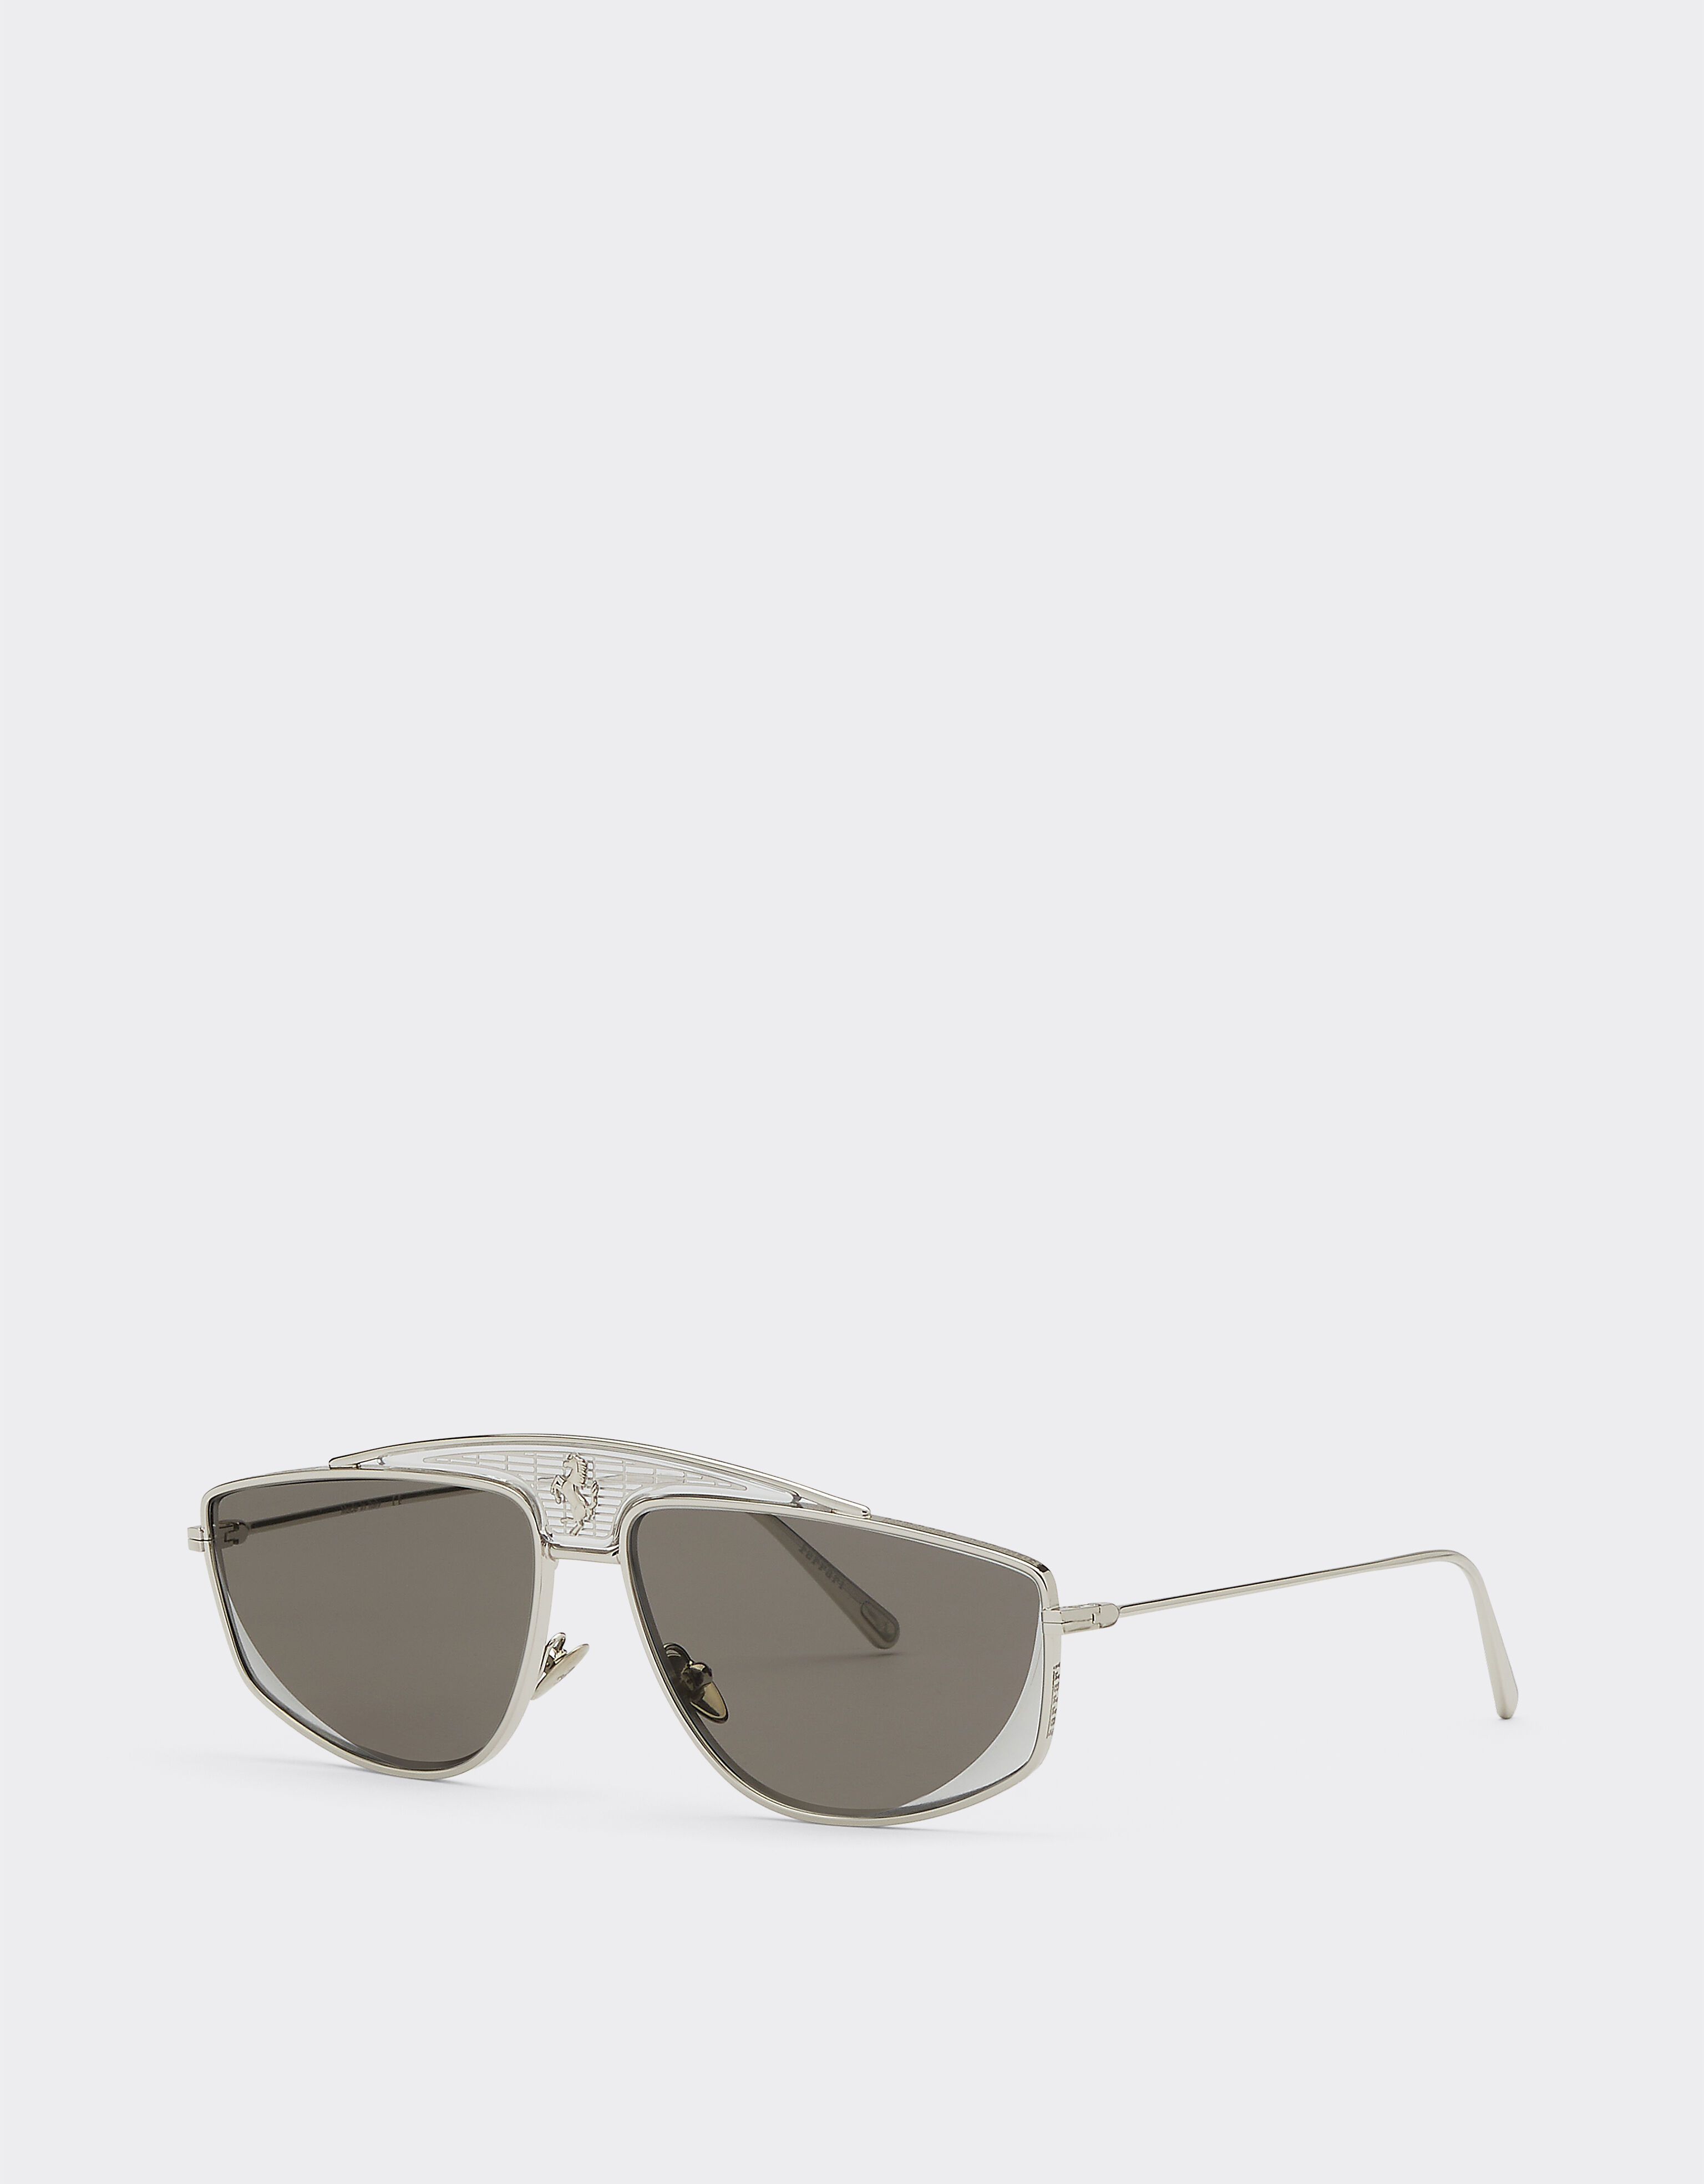 Ferrari Ferrari sunglasses with silver mirrored lenses Silver F0408f